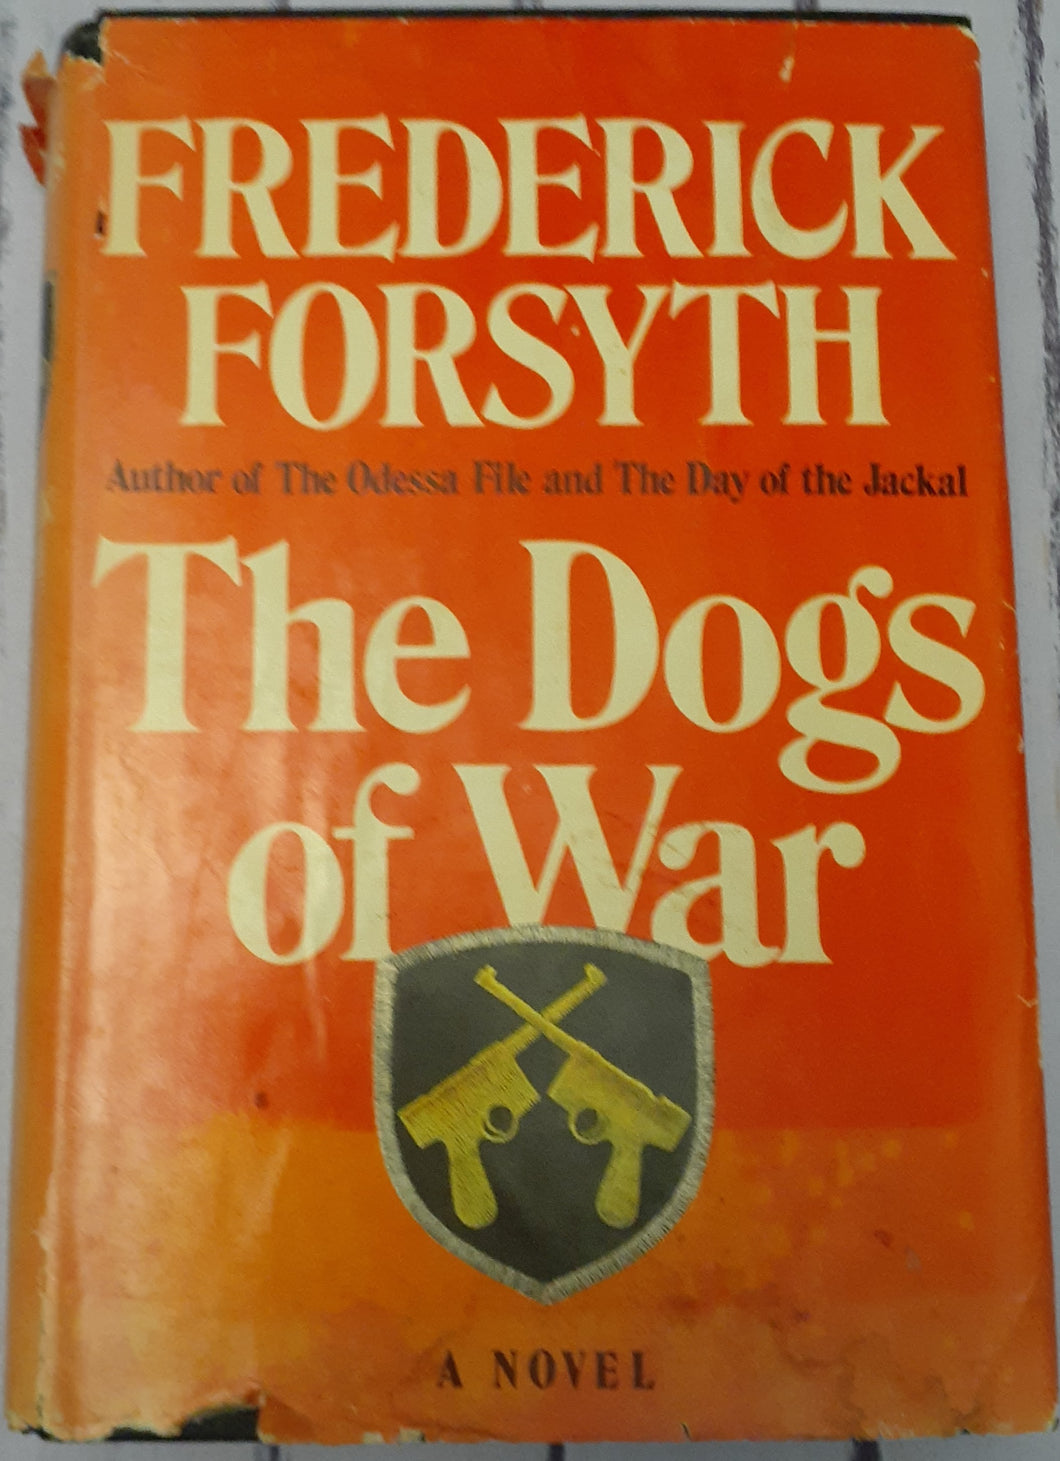 The Dogs of War - A Novel